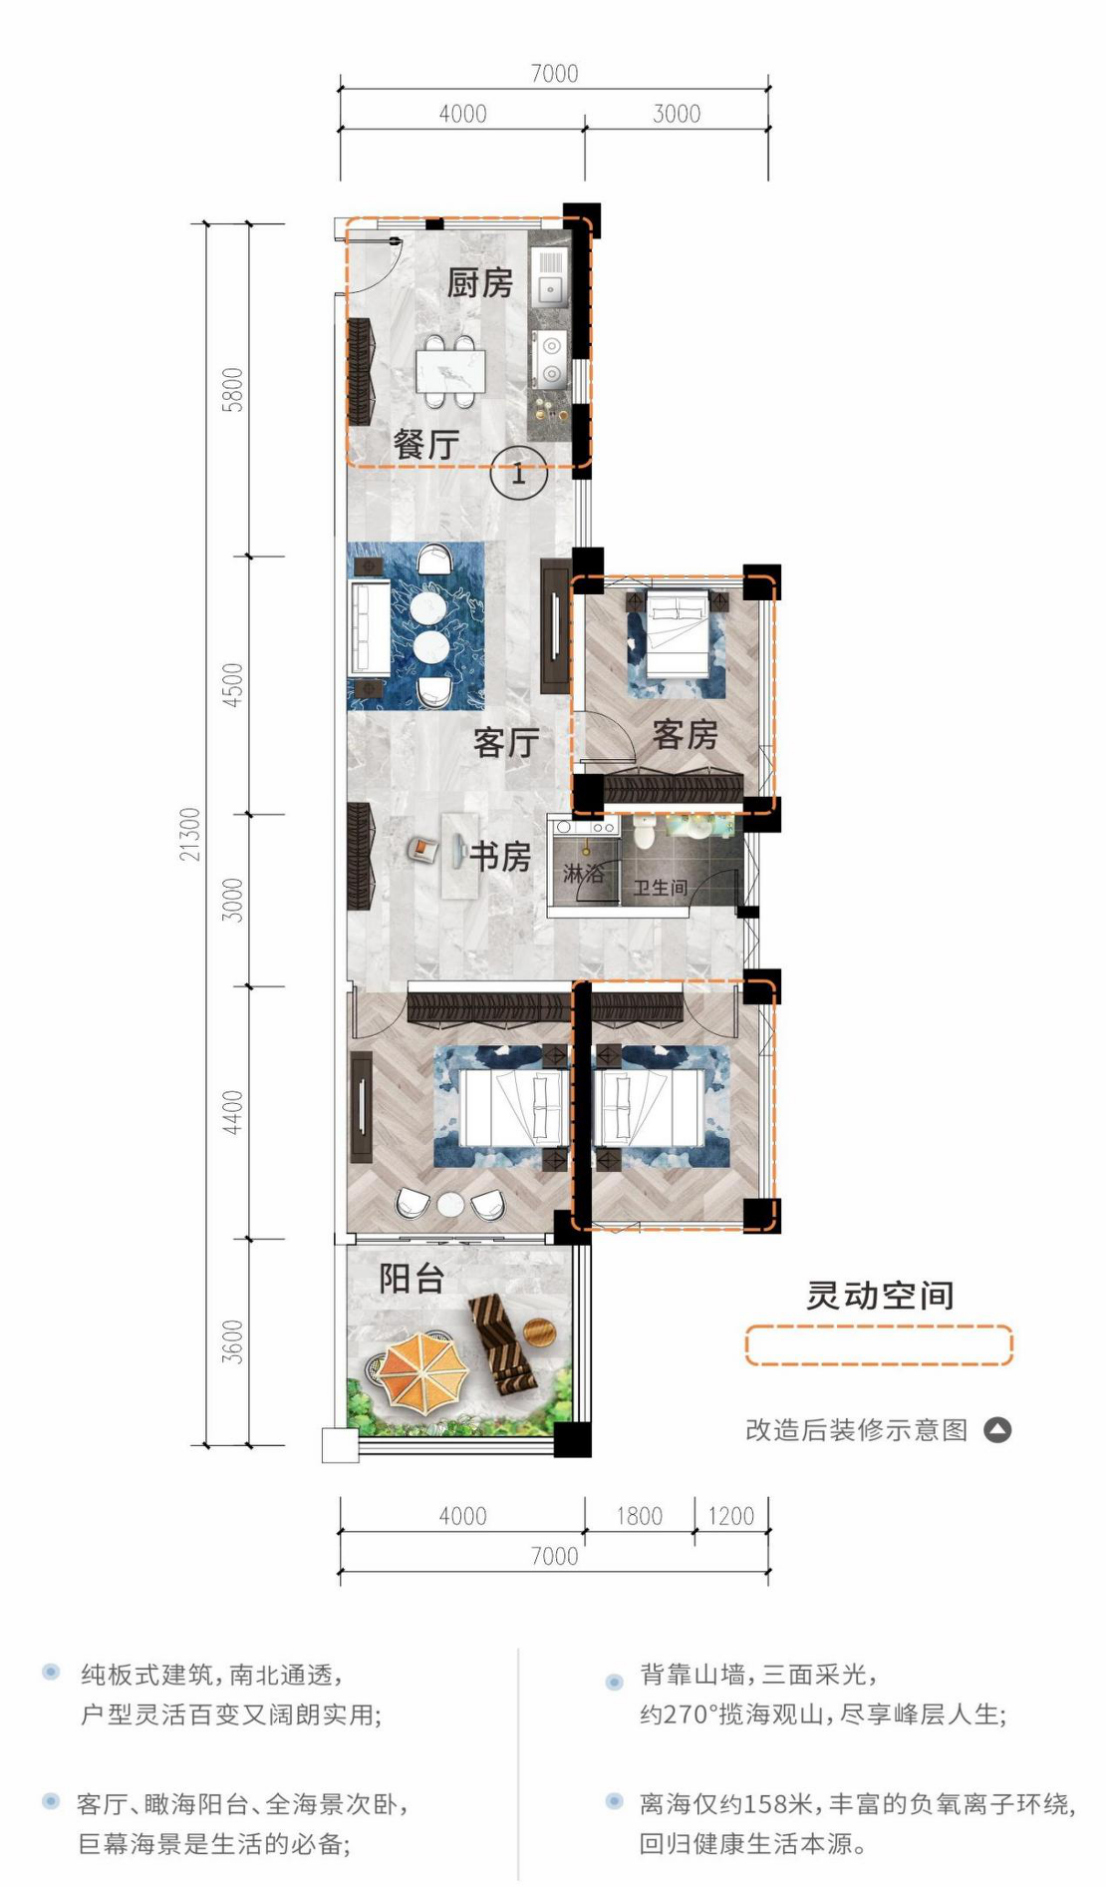 和居壹海江山 高层 01/10户型 建筑面积82㎡ 3房2厅1卫 （使用面积122㎡）